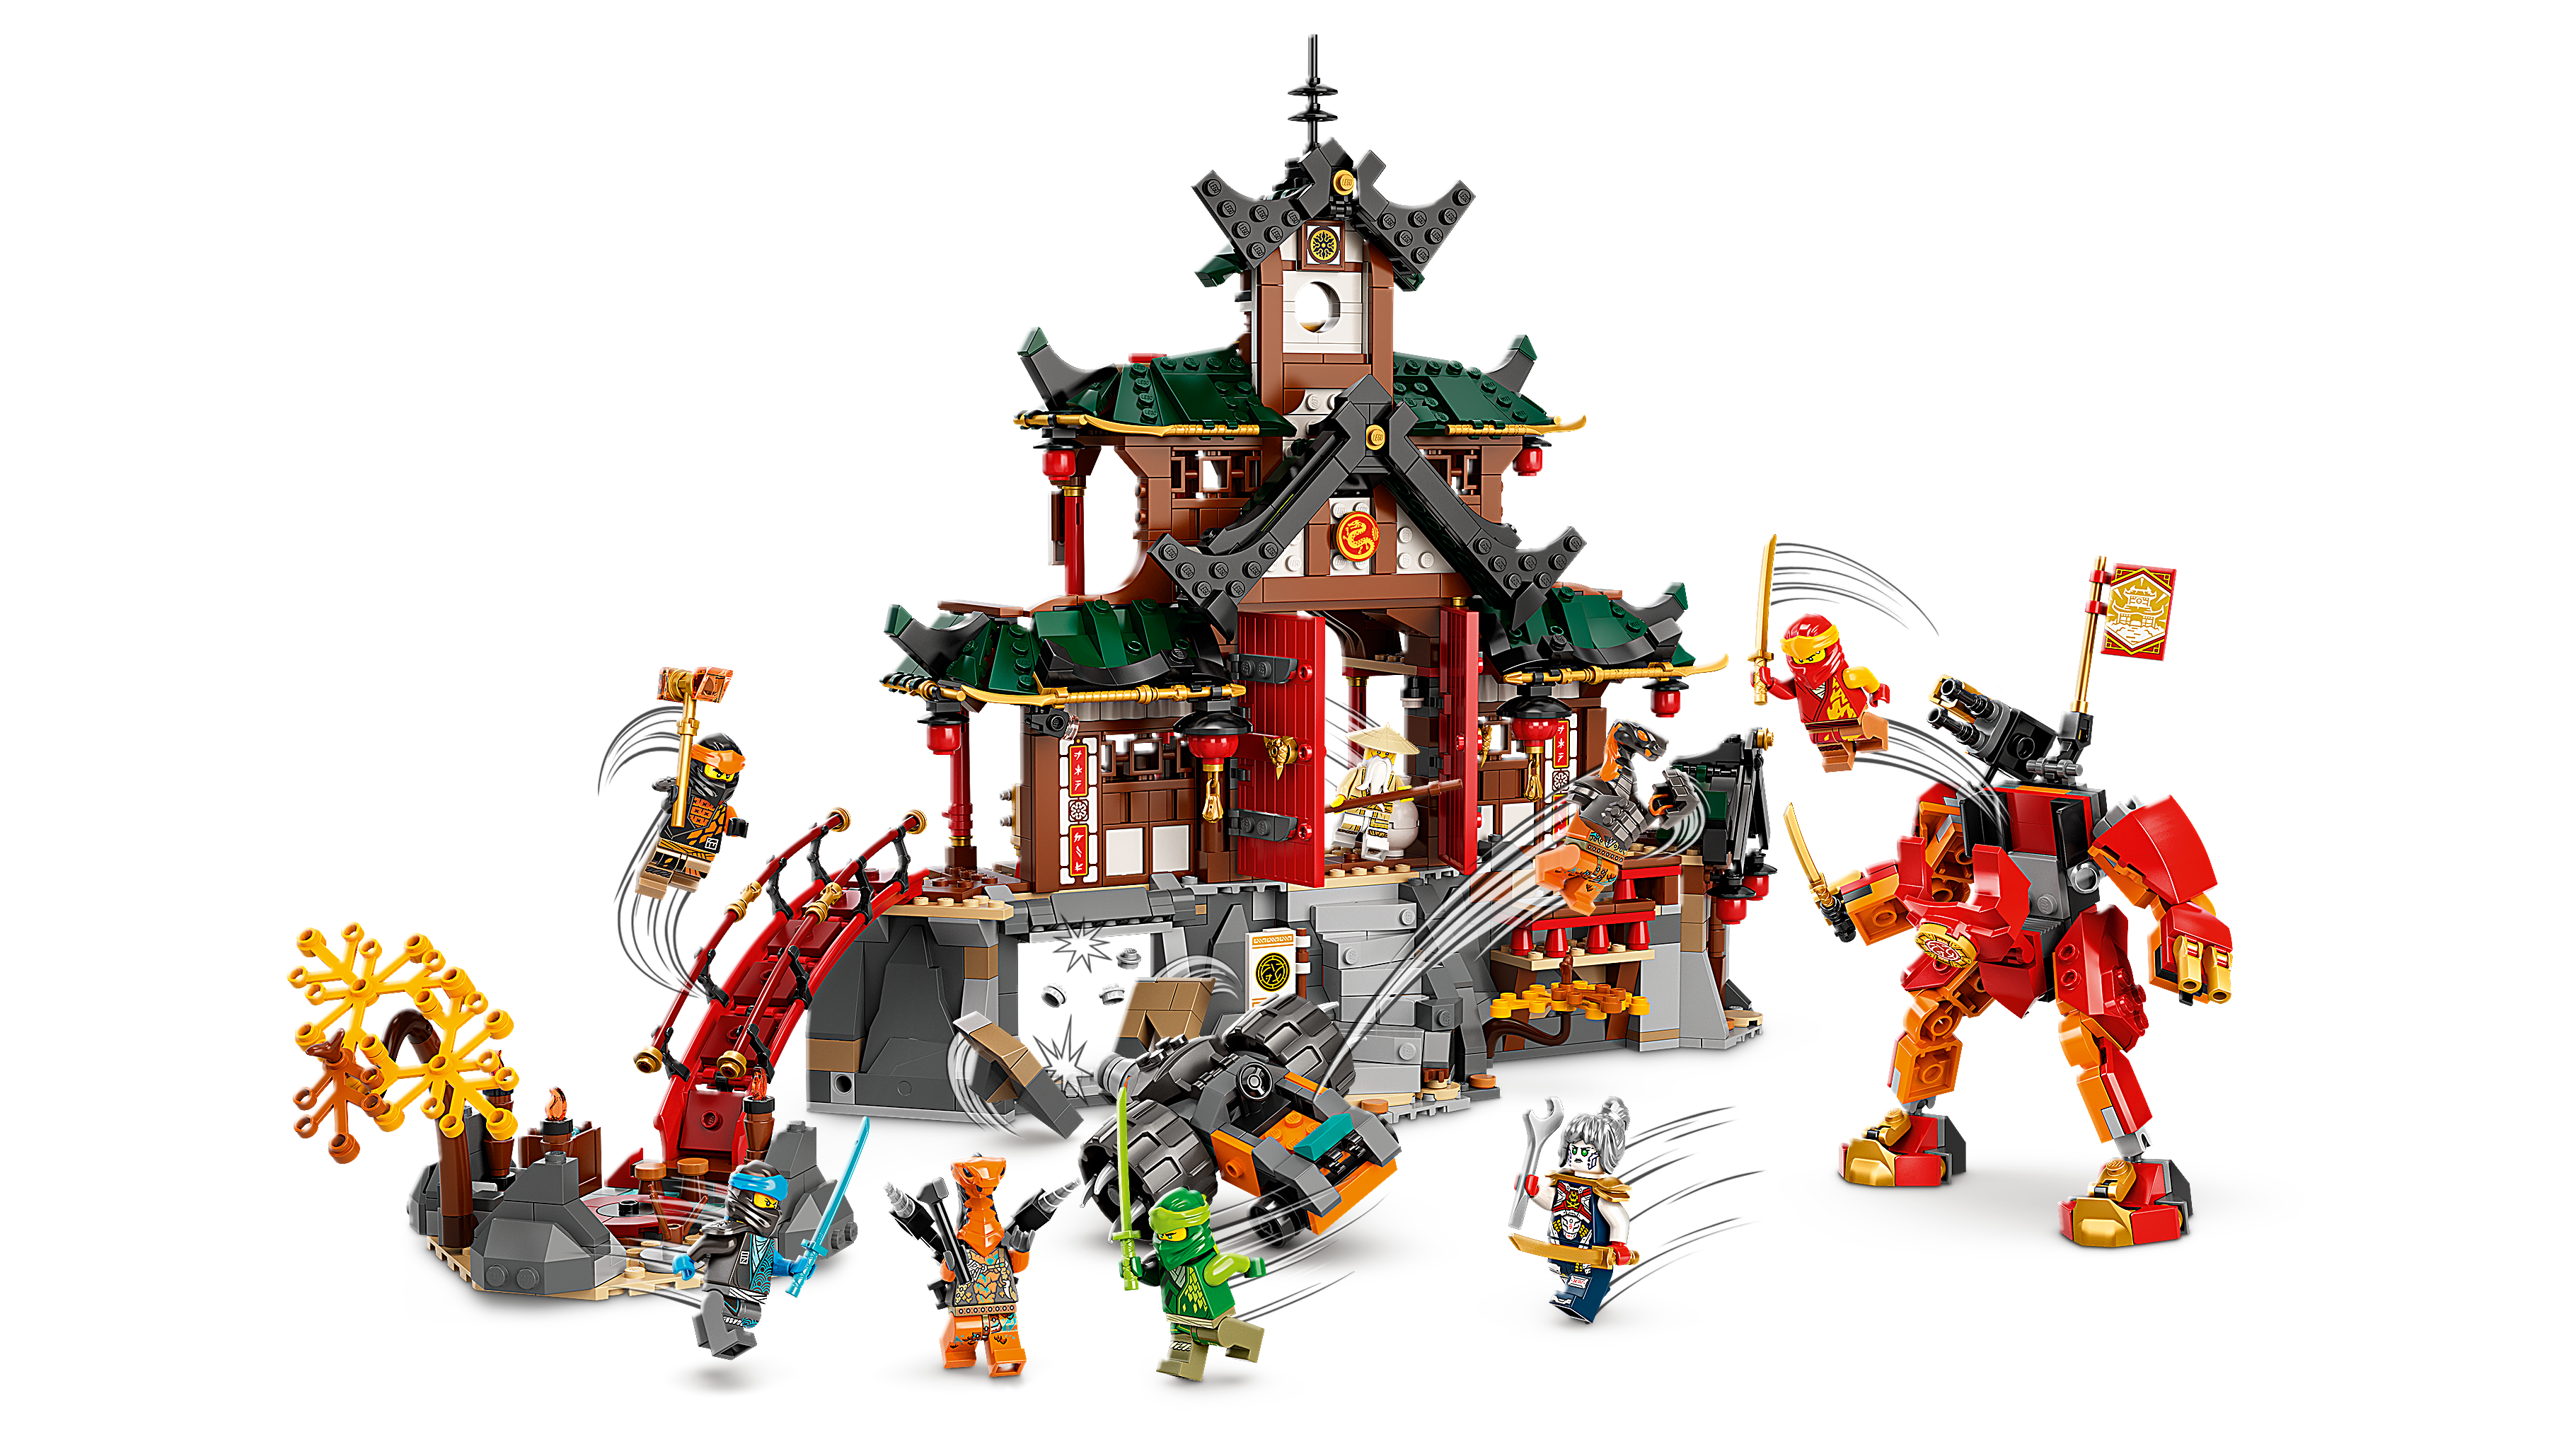 ニンジャ道場 71767 - レゴ®ニンジャゴー セット - LEGO.comキッズ